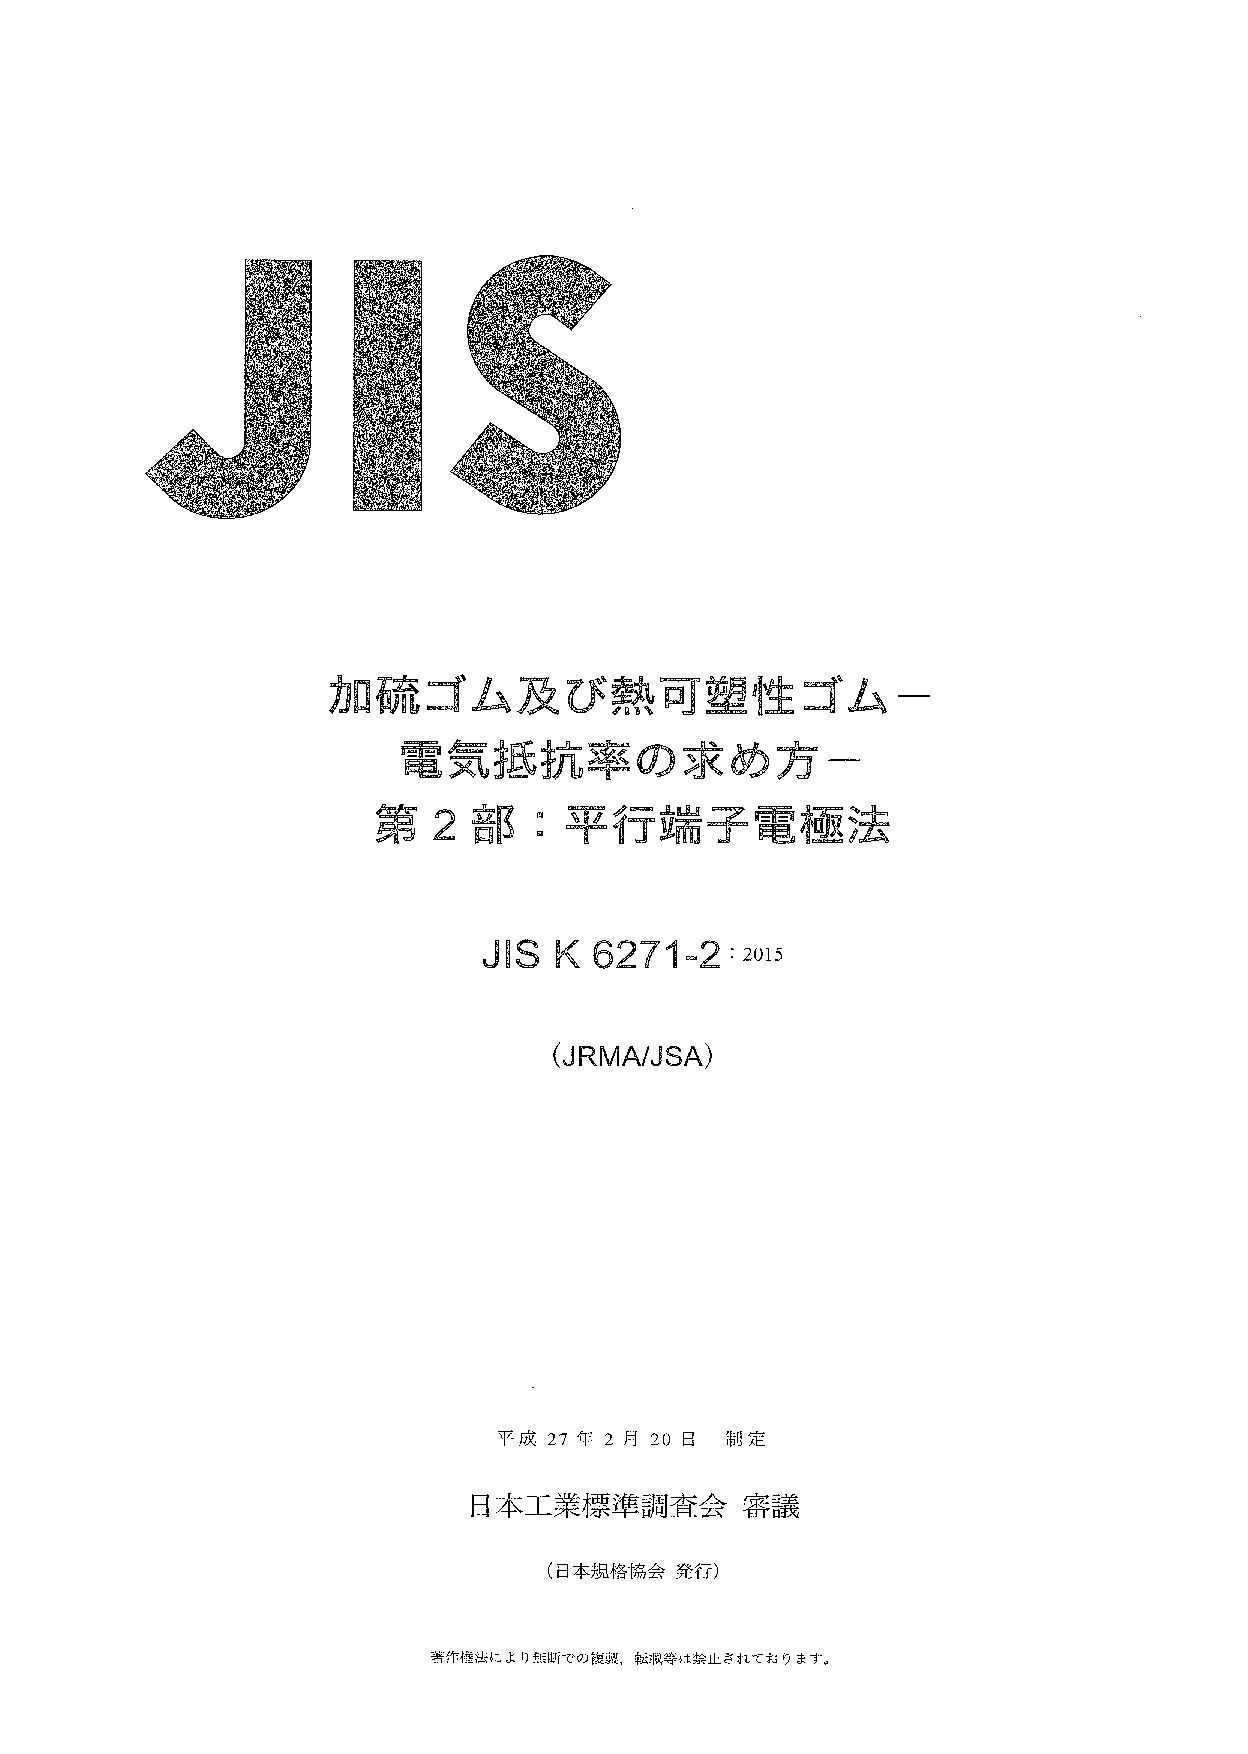 JIS K 6271-2:2015封面图